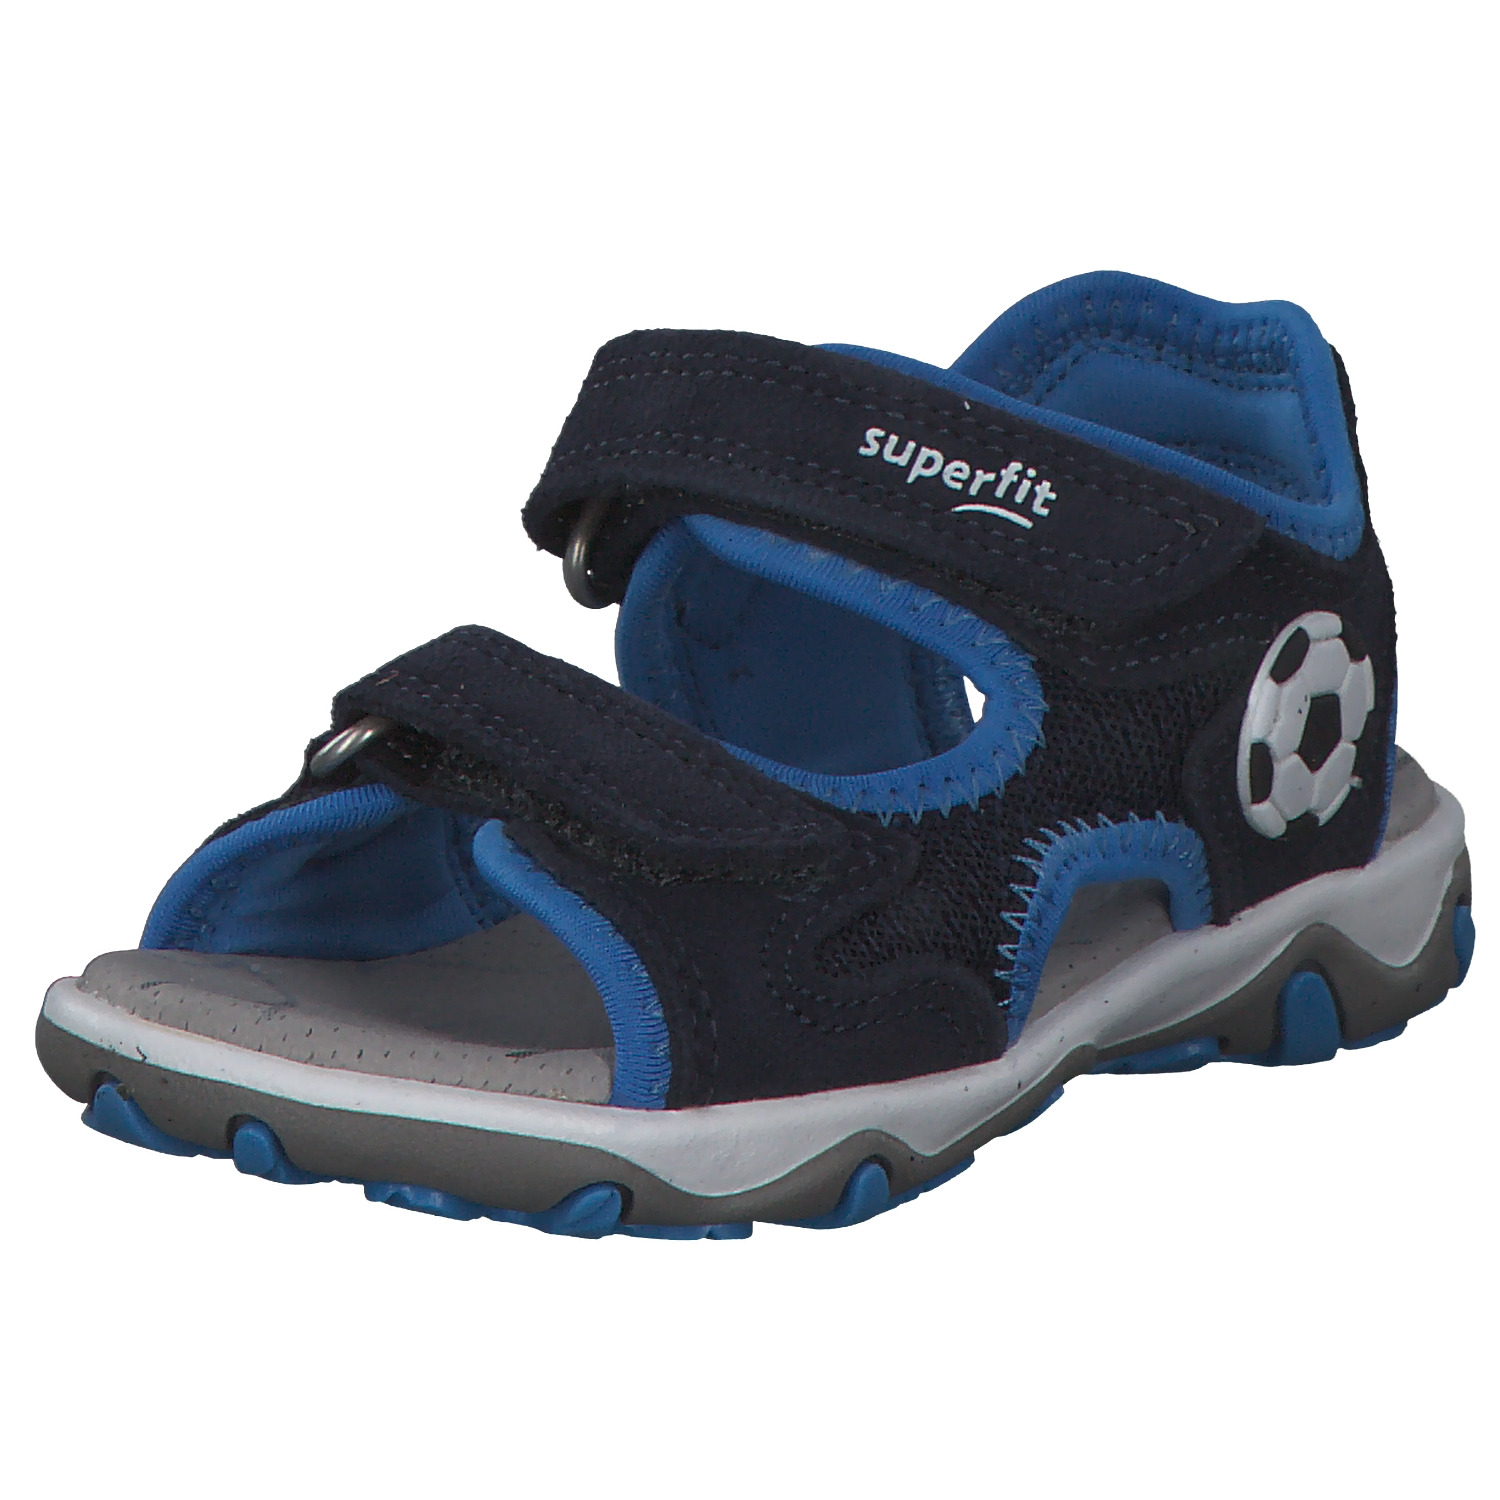 Сандалии Superfit для мальчиков, 1-009469-8000, размер 28, сине-черные черные сандалии с отделкой в полоску montelpare tradition